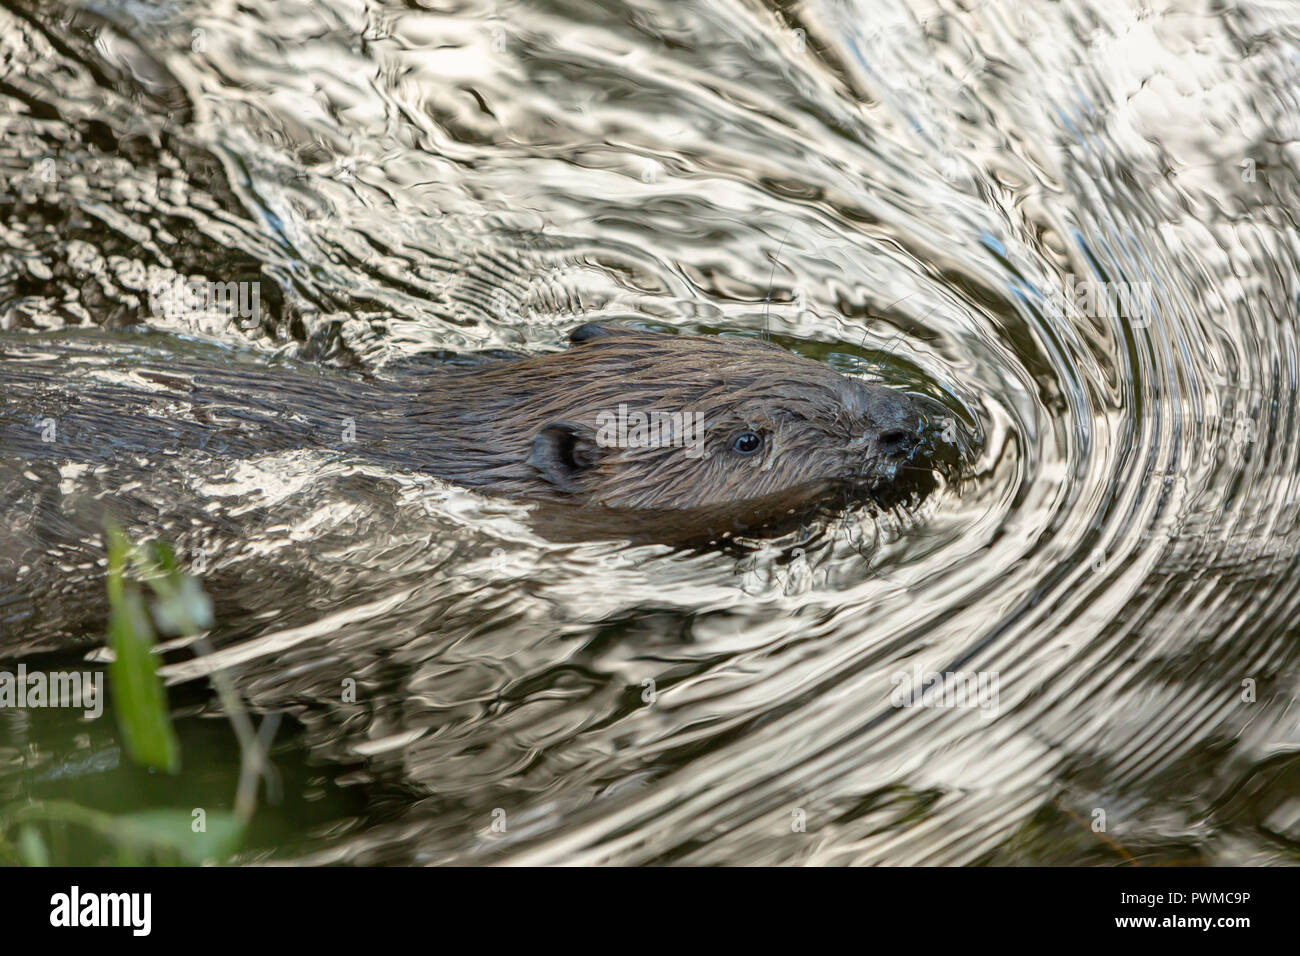 Eurasian castoro (Castor fiber) nuotare nel fiume Ericht, vicino a Blairgowrie, Scotland, Regno Unito. Foto Stock